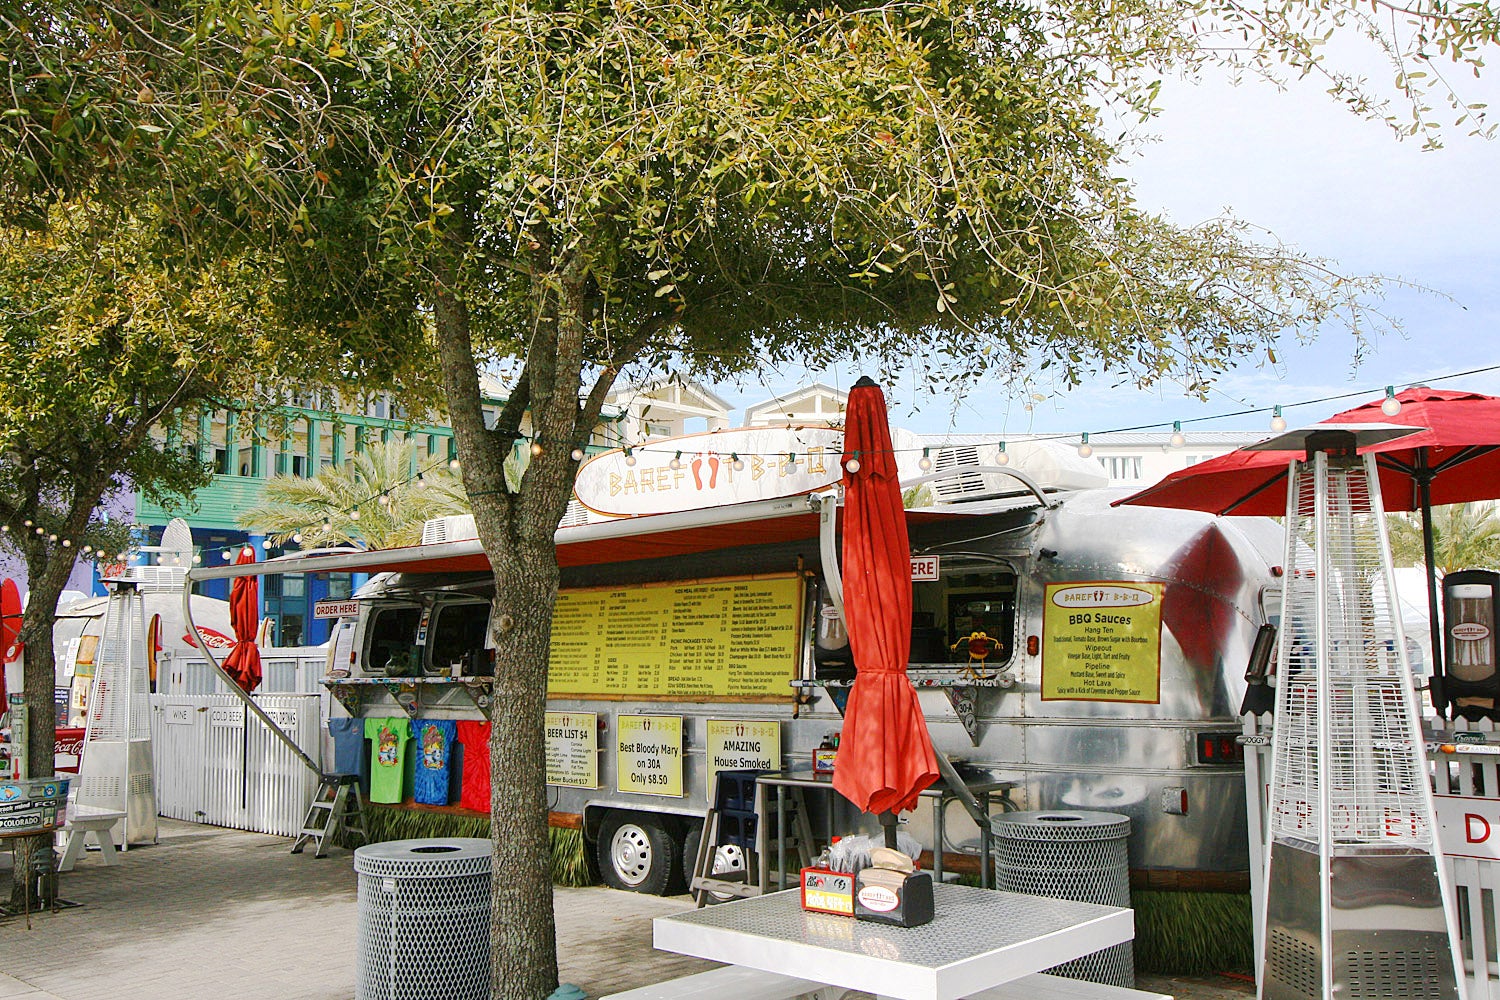 Seaside Food Trucks nearby